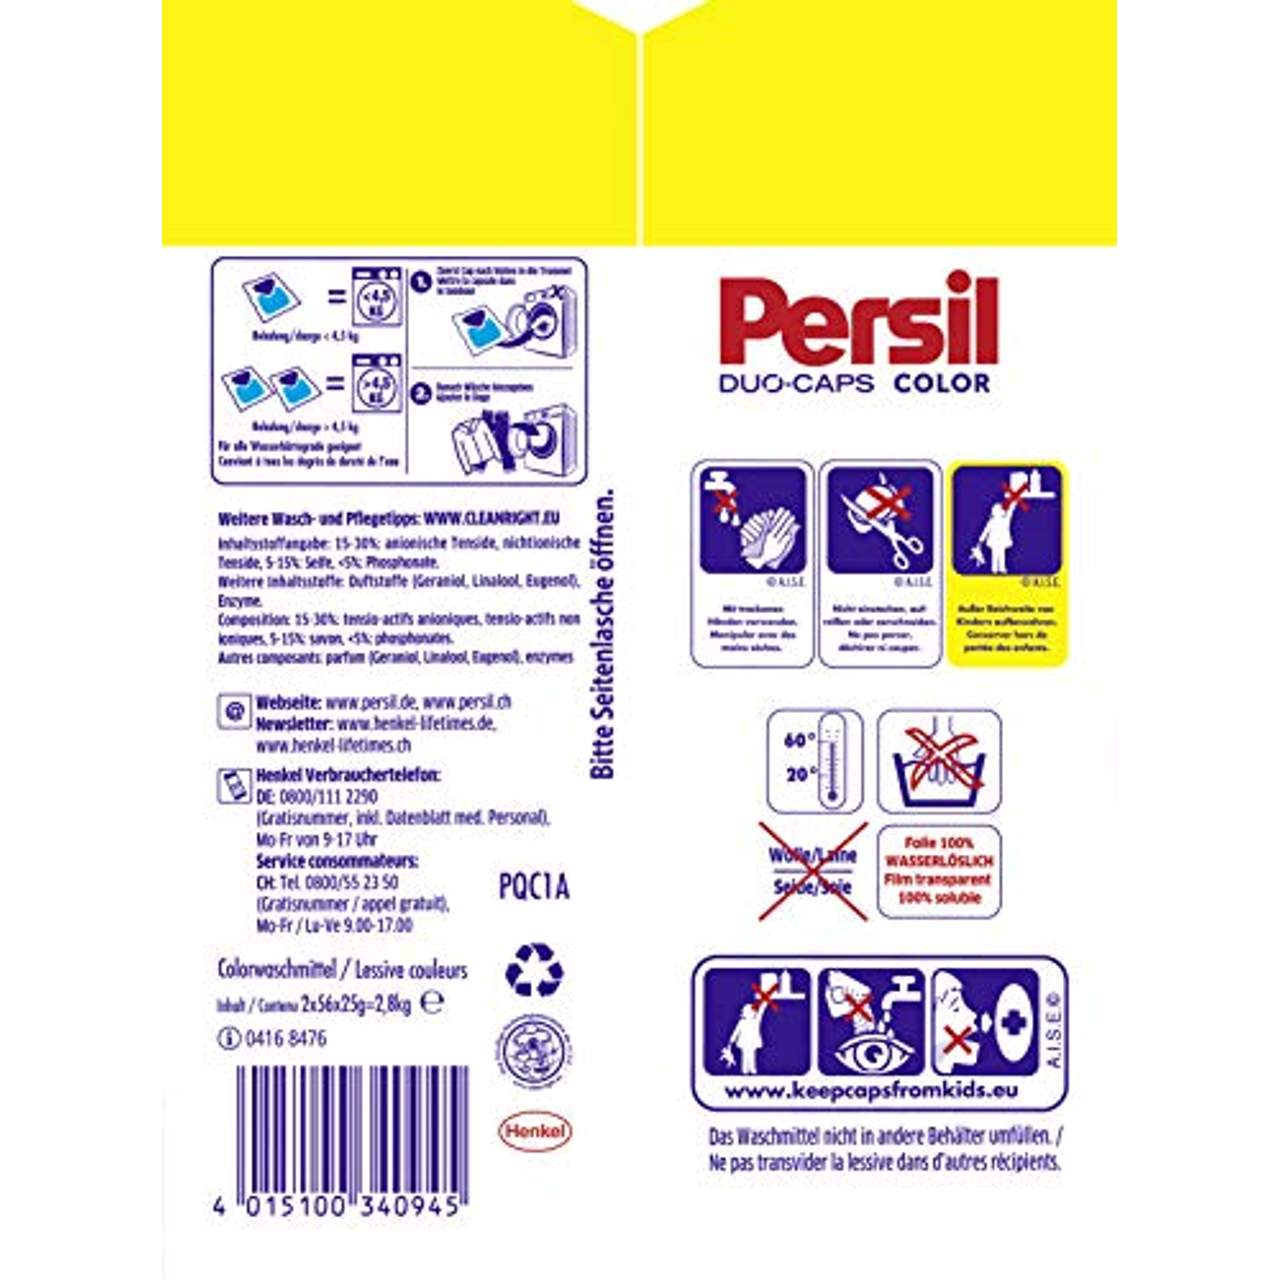 Persil Color Duo-Caps vordosiertes Colorwaschmittel